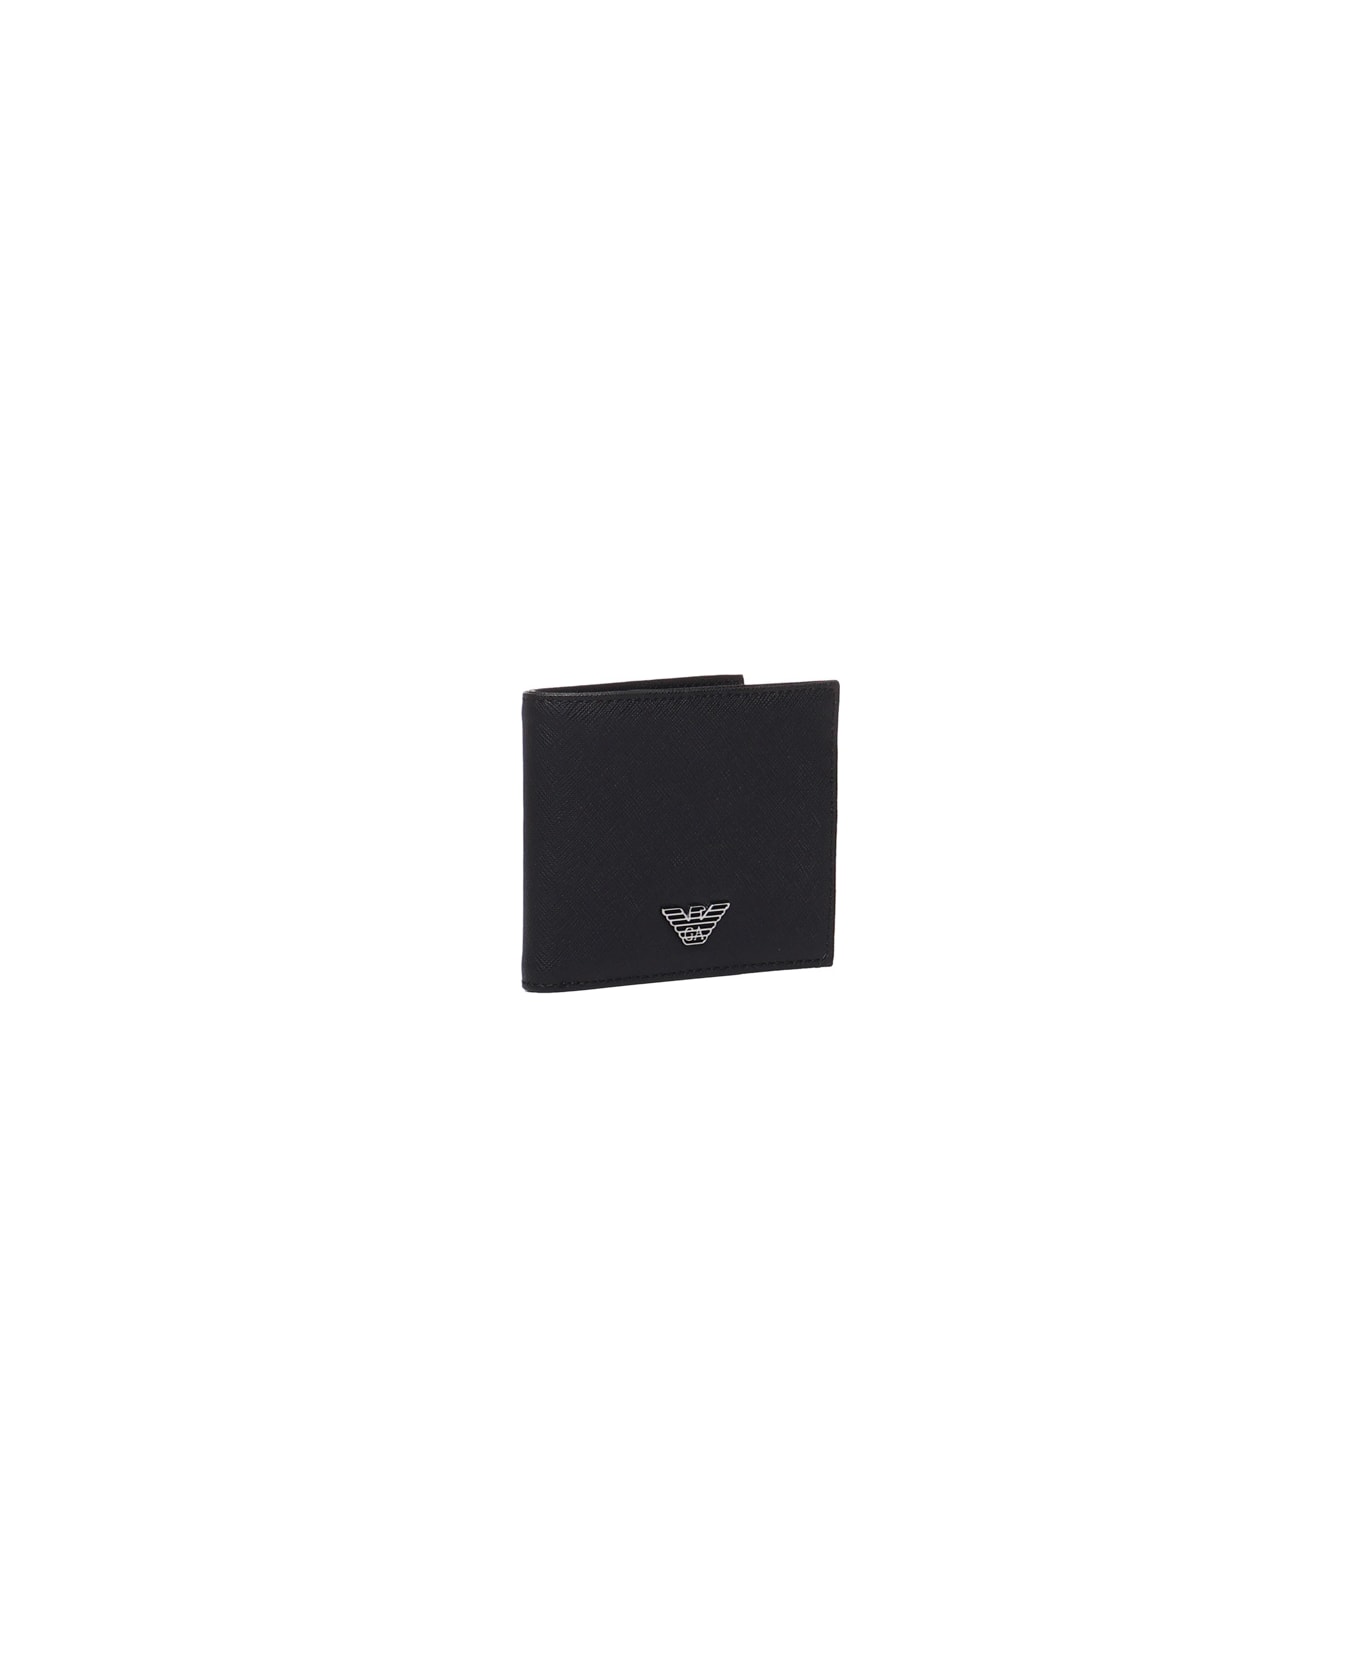 Emporio Armani Wallet With Application - Black